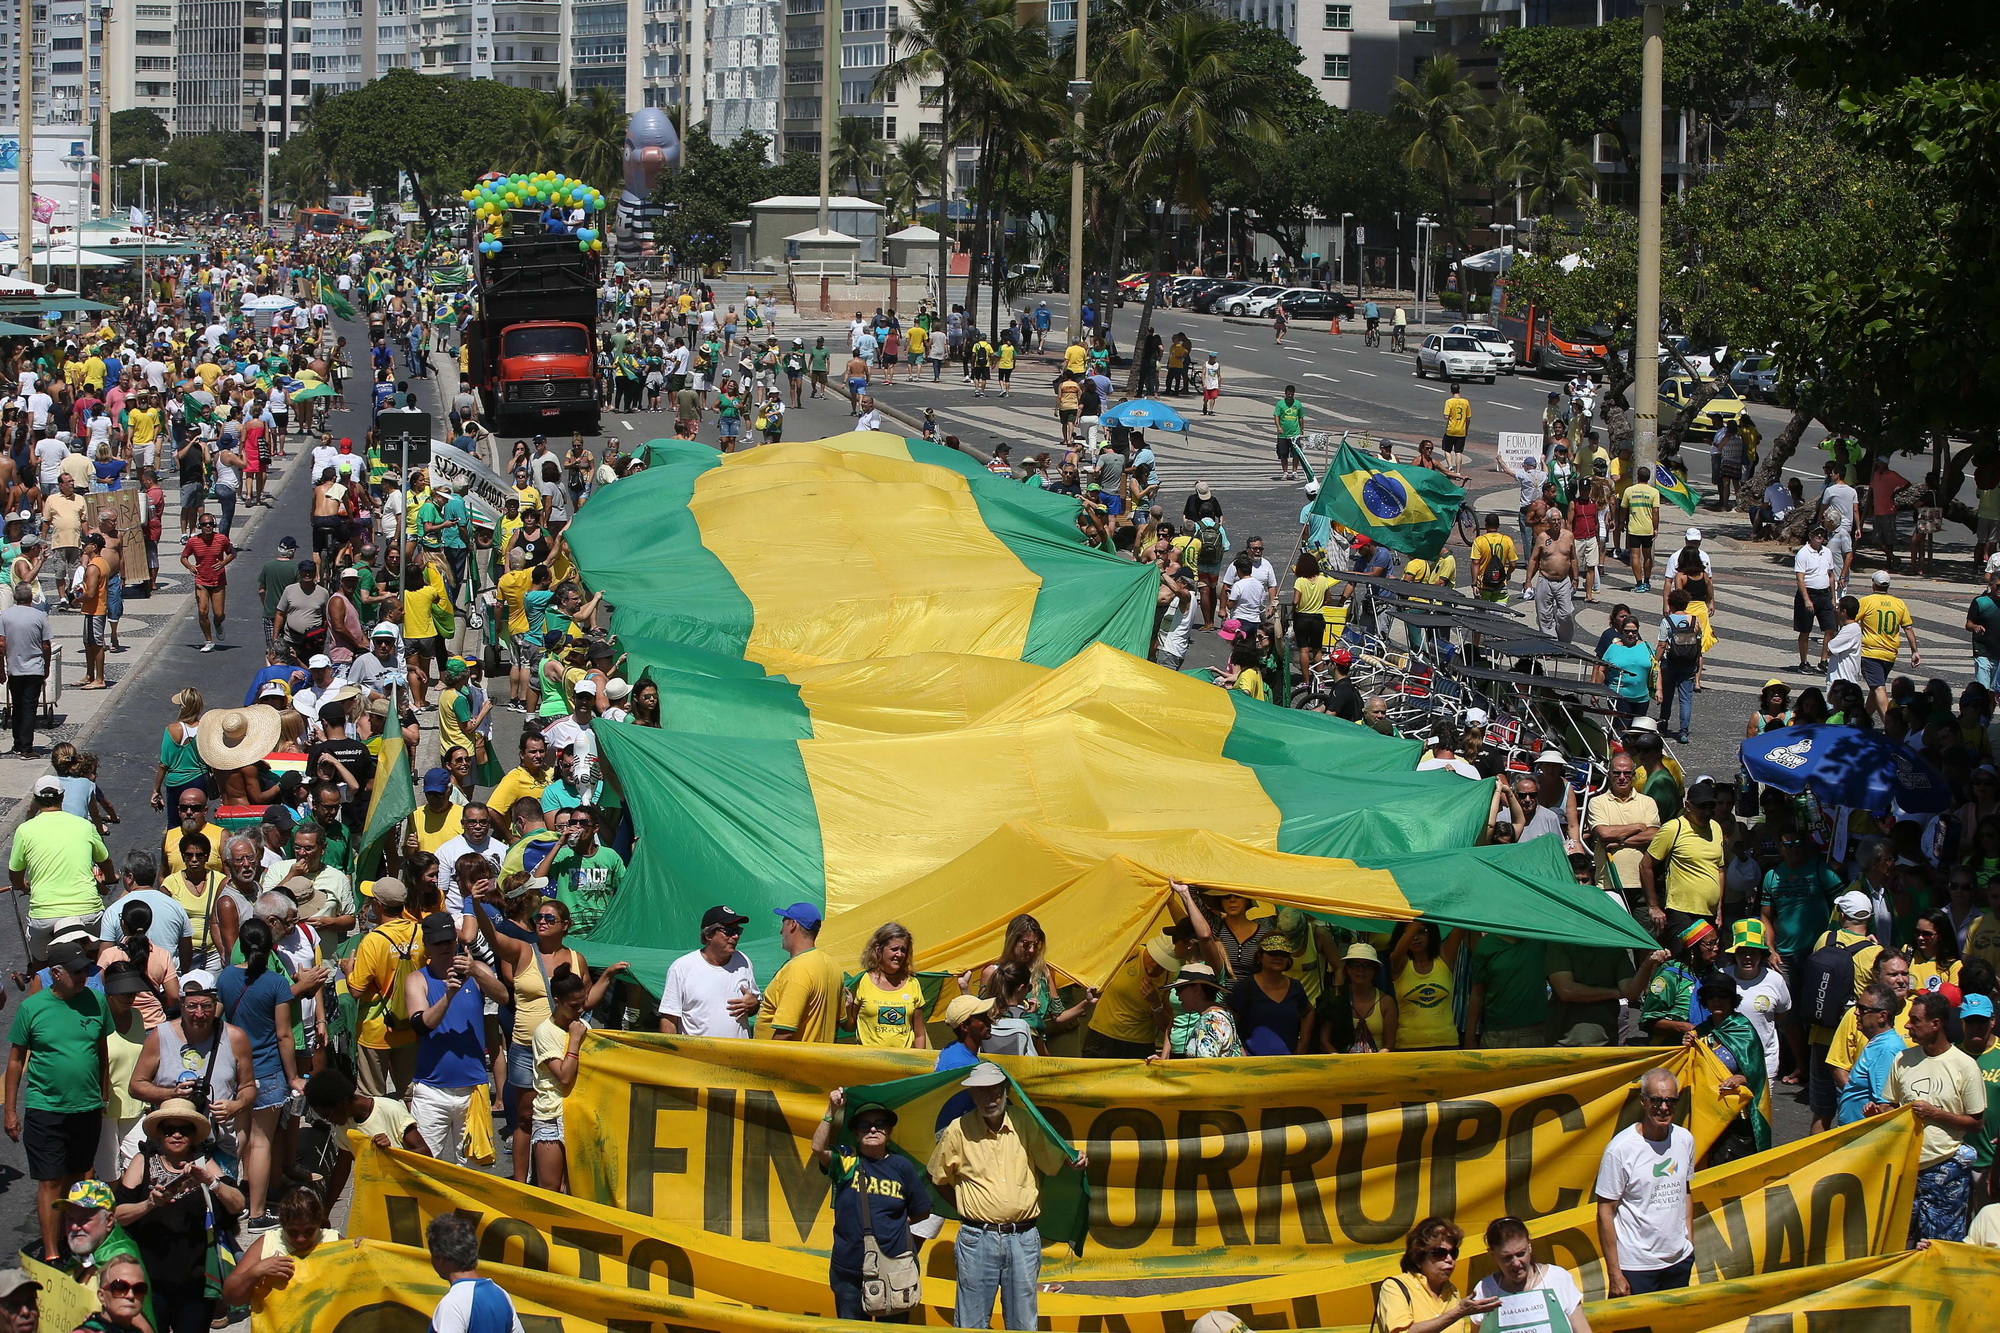 Hàng chục nghìn người Brazil tại nhiều thành phố trên cả nước đã xuống đường biểu tình phản đối nạn tham nhũng đang hoành hành ở nước này, đồng thời yêu cầu cơ quan tư pháp điều tra và xét xử nghiêm minh hàng trăm chính trị gia đang bị cáo buộc tham ô. Cuộc biểu tình đã diễn ra từ sáng sớm tại thủ đô Brasilia và thành phố Rio de Janeiro, sau đó lan tới Sao Paulo.(Ảnh: EPA/TTXVN)